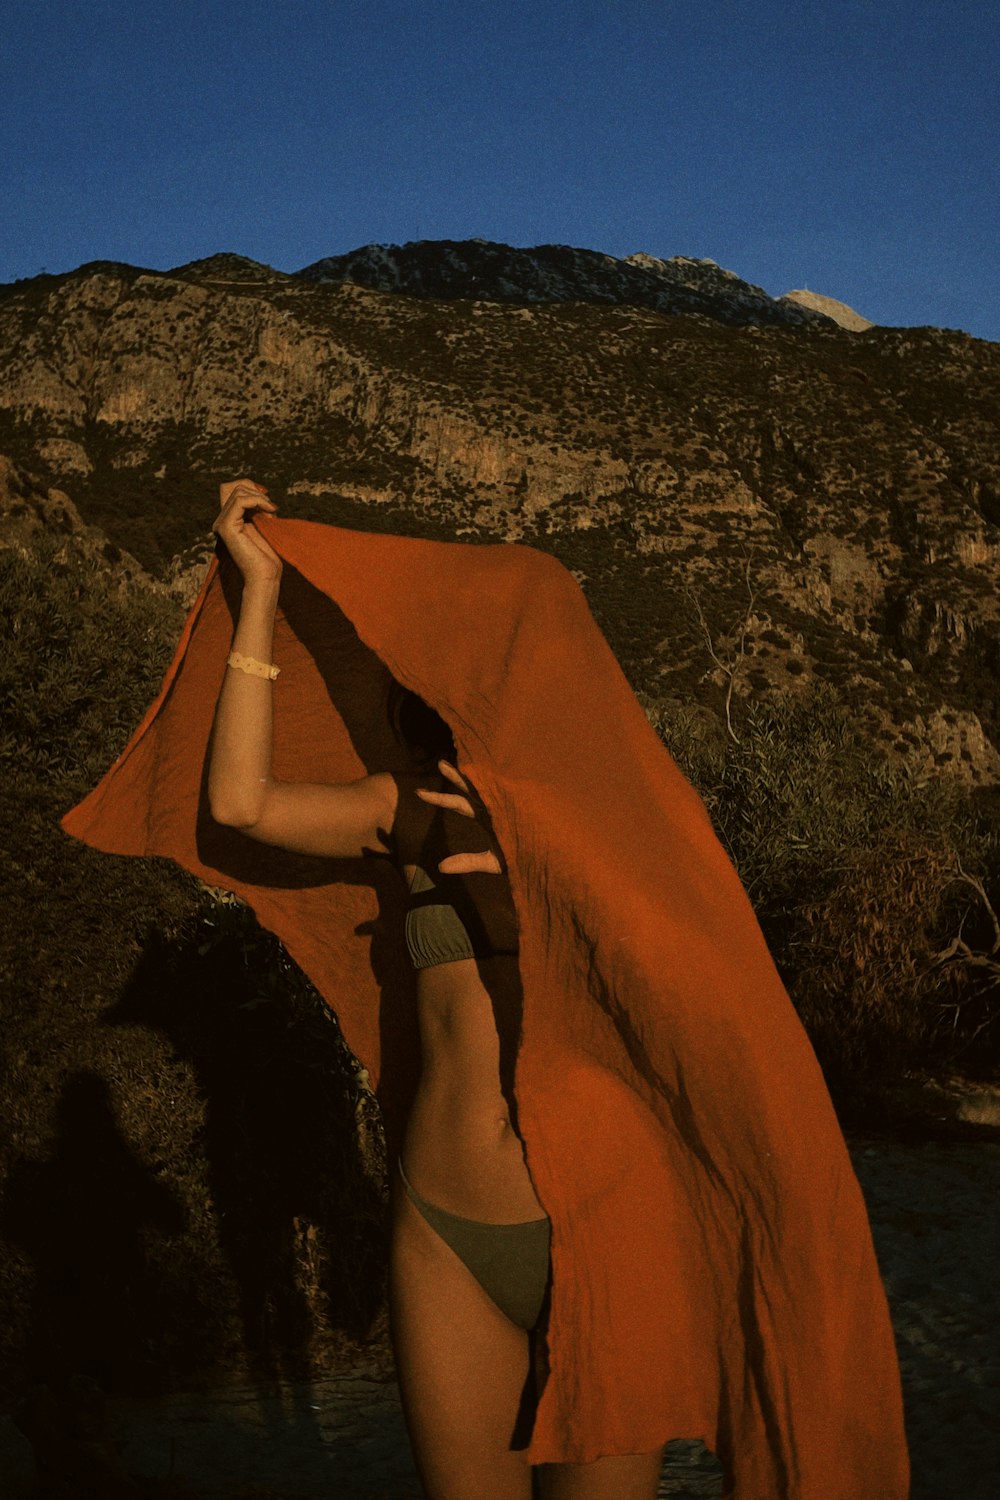 a woman in a bikini holding an orange towel